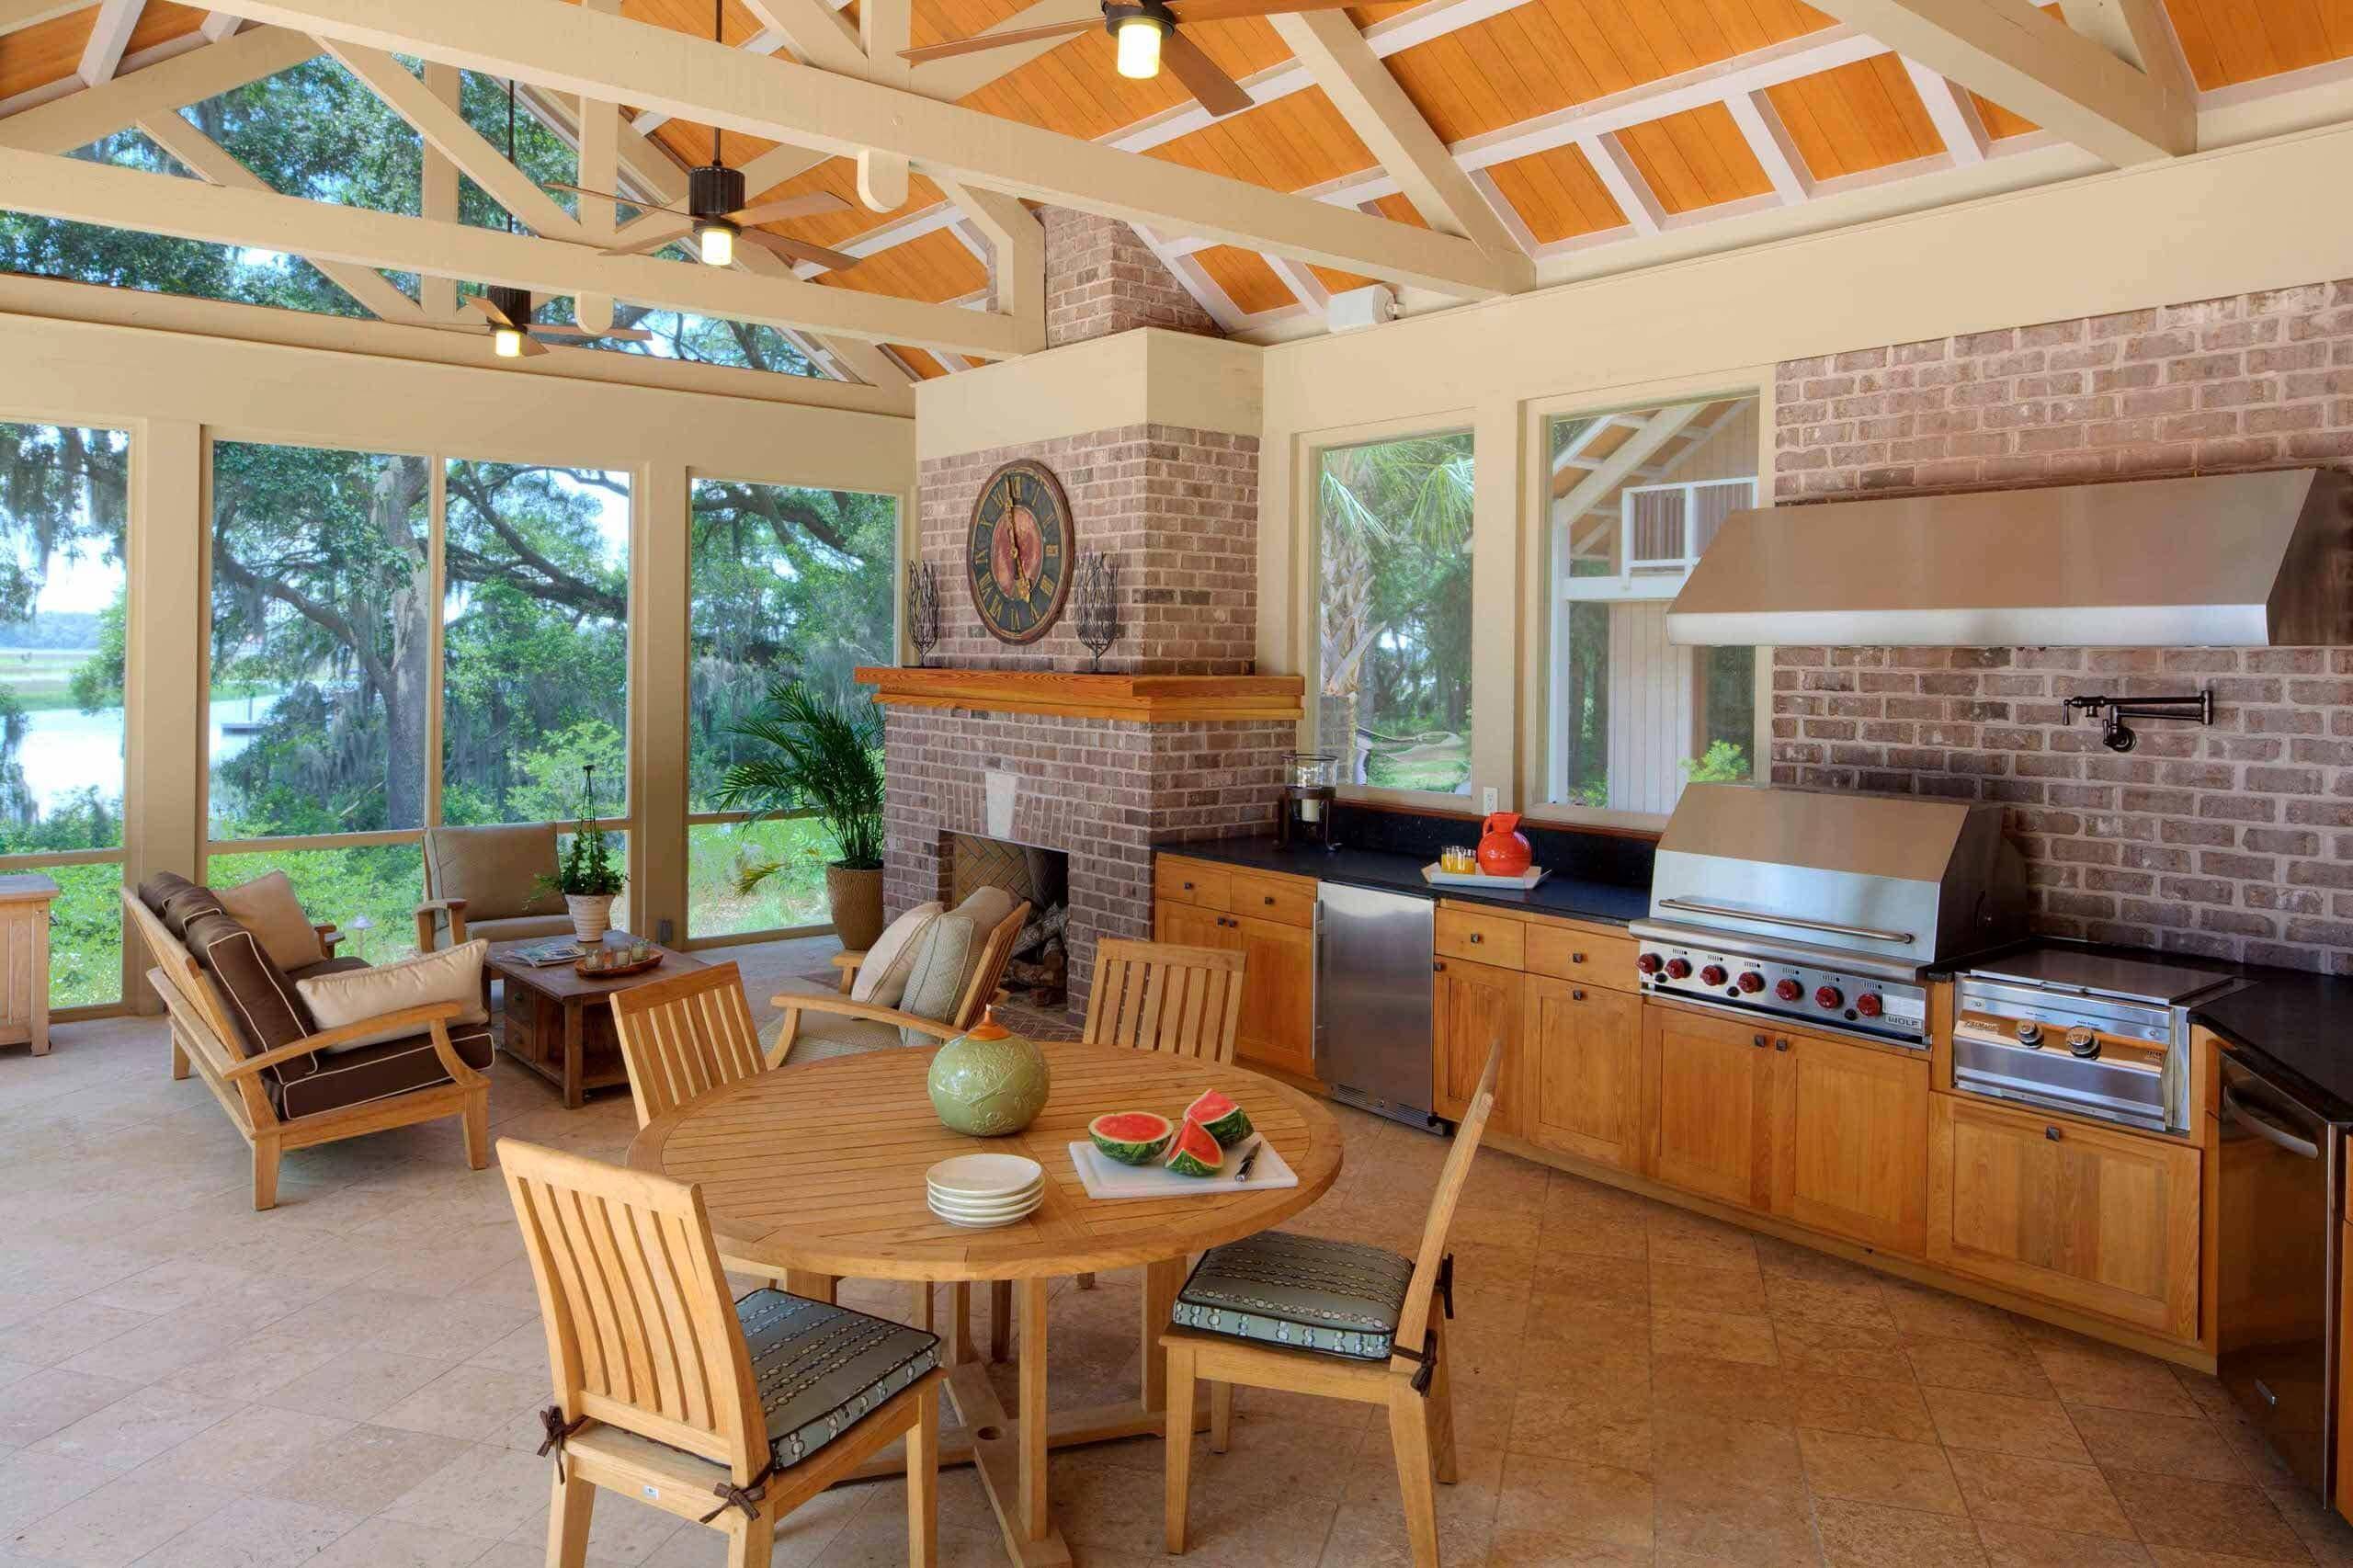 Летняя кухня в частном доме: проекты на даче с террасой, верандой, барбекю, мангалом, печью